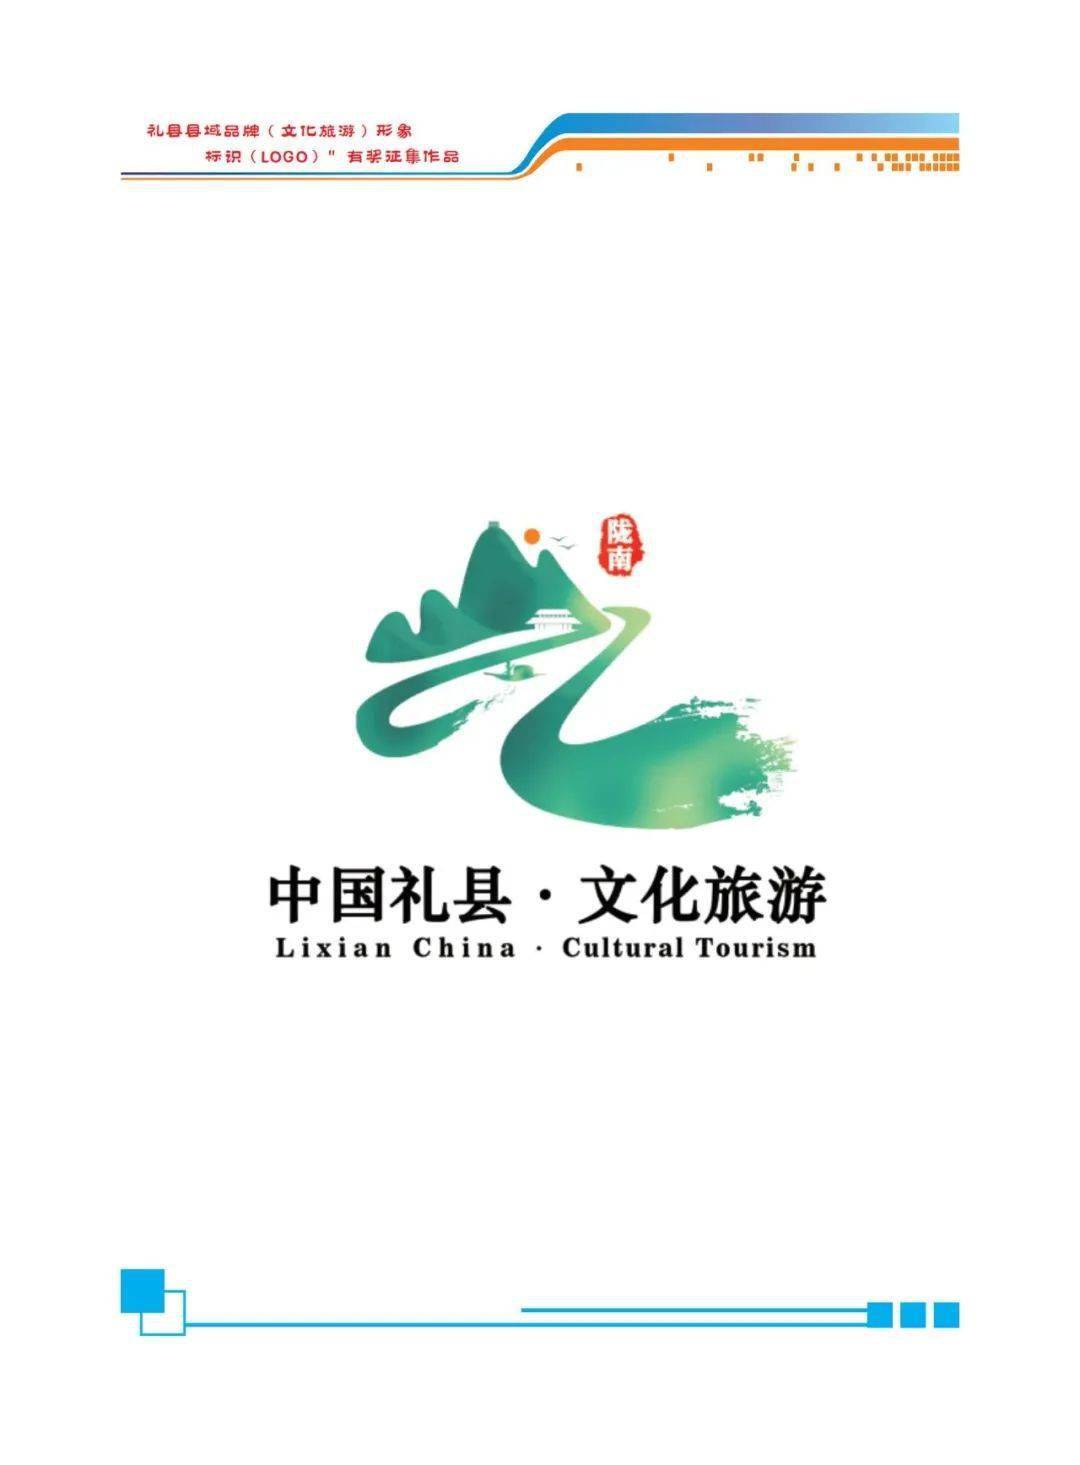 礼县县域品牌文化旅游形象标识logo有奖征集活动网络投票开始啦